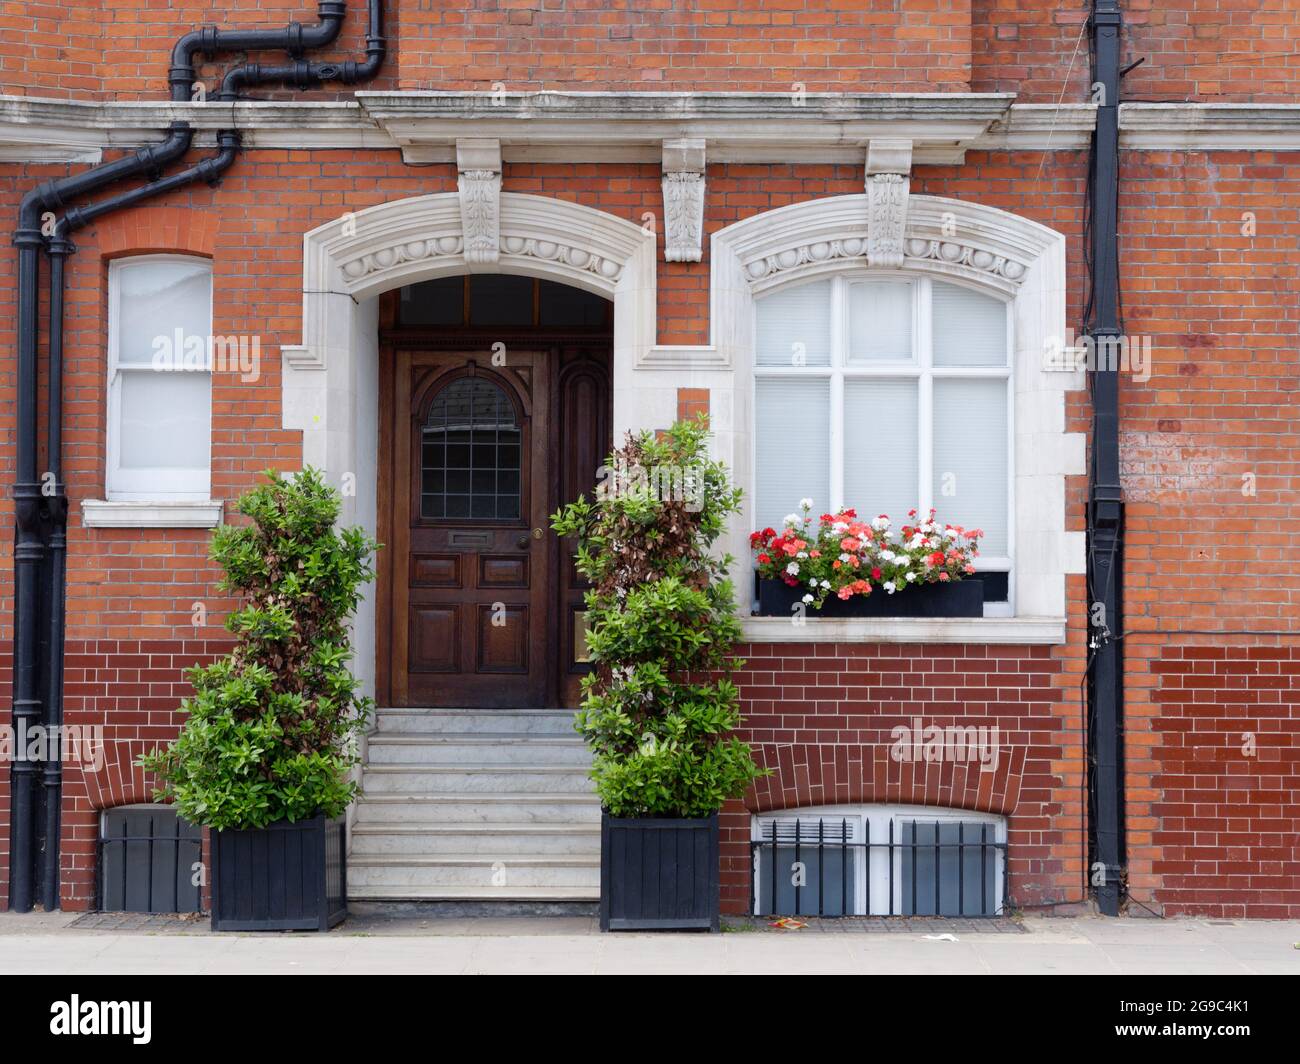 Londres, Grand Londres, Angleterre, 12 juin 2021: Propriété résidentielle en brique avec un escalier menant à une porte d'entrée marron. Banque D'Images